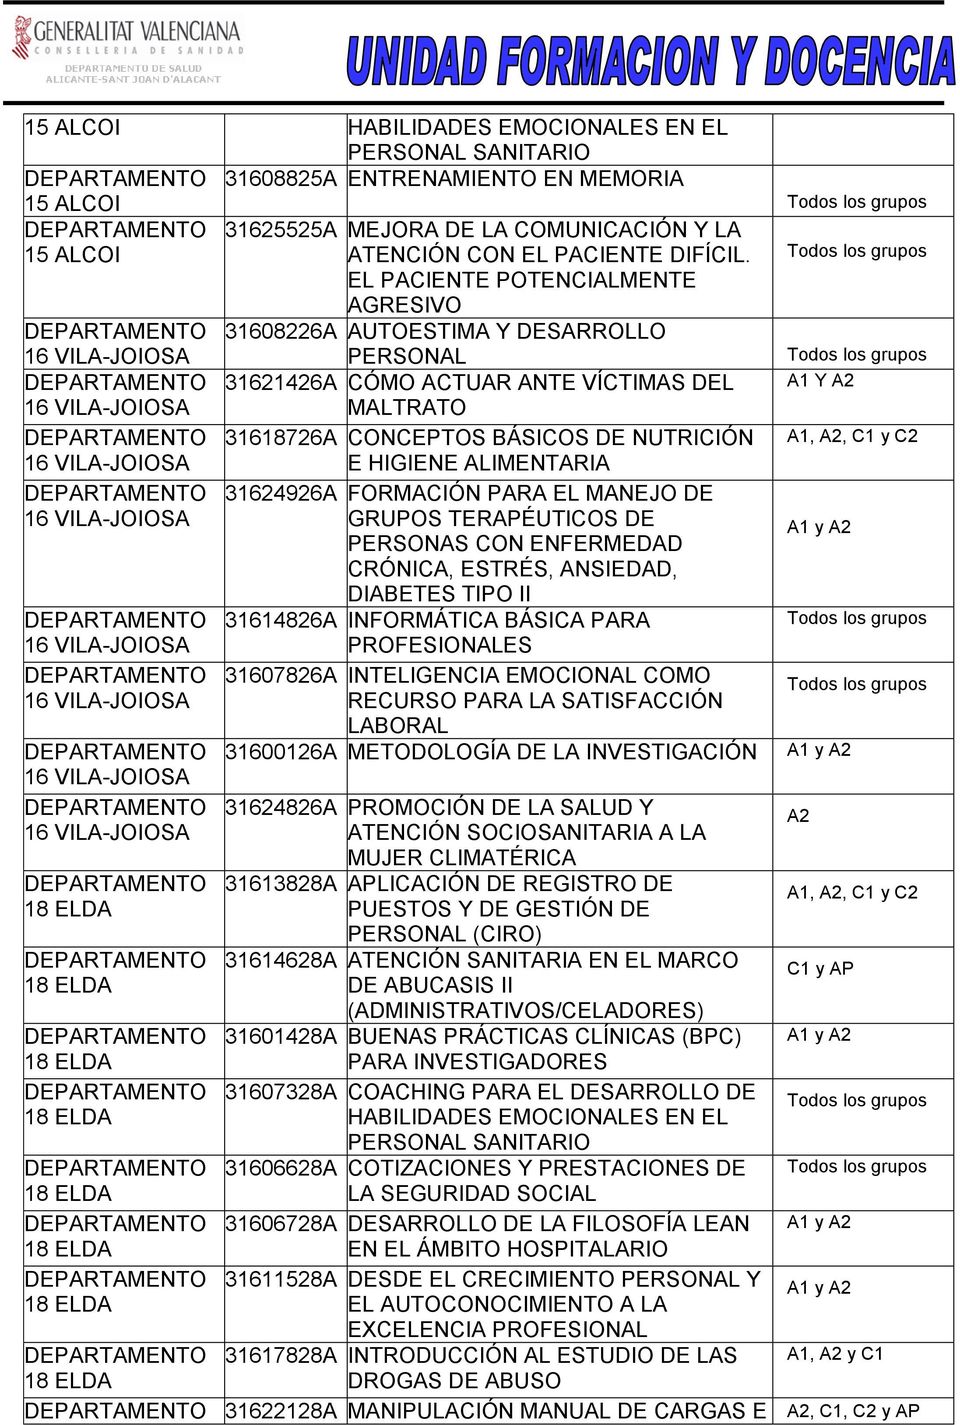 31624926A FORMACIÓN PARA EL MANEJO DE GRUPOS TERAPÉUTICOS DE PERSONAS CON ENFERMEDAD CRÓNICA, ESTRÉS, ANSIEDAD, DIABETES TIPO II 31614826A INFORMÁTICA BÁSICA PARA PROFESIONALES 31607826A INTELIGENCIA